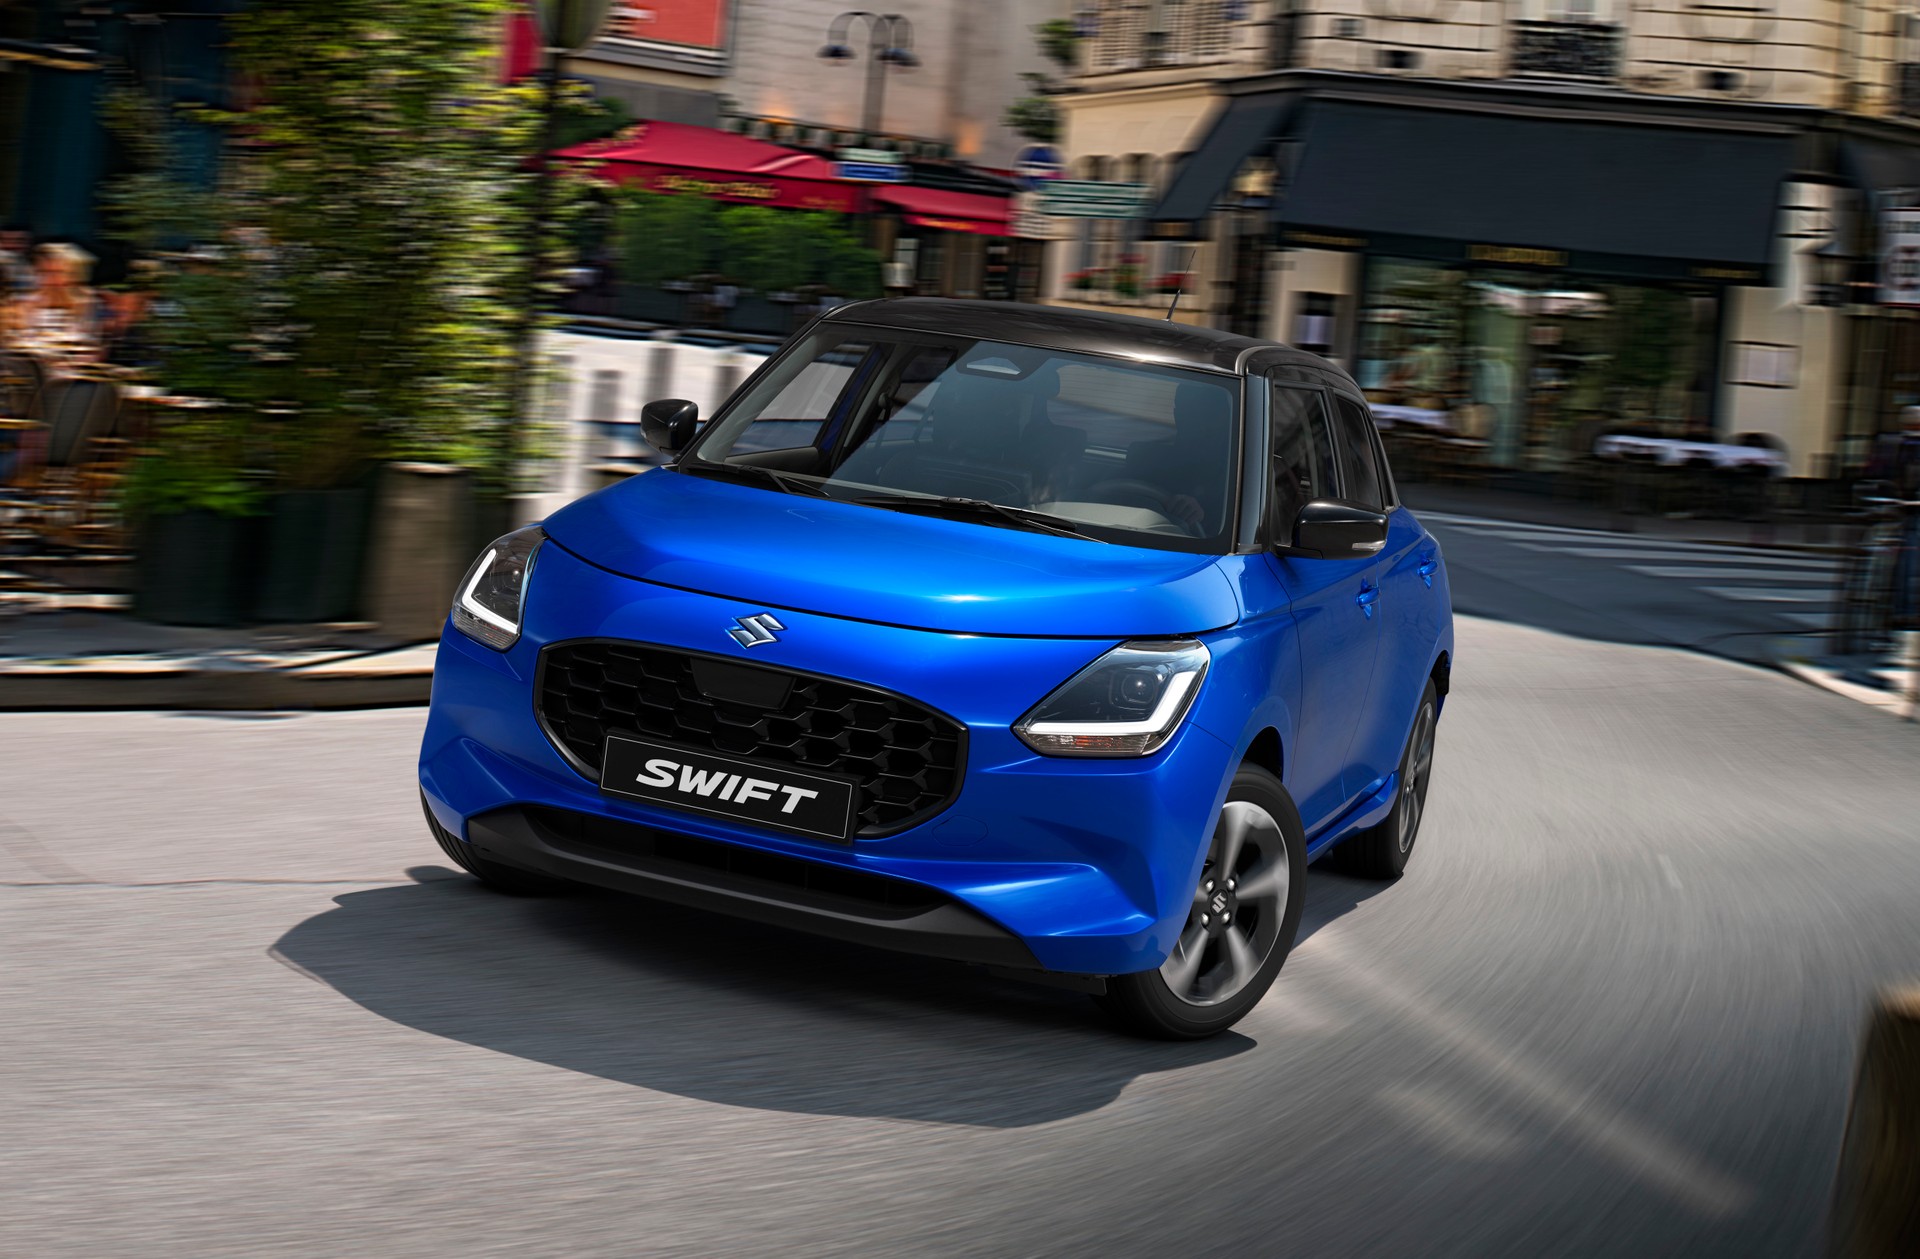 Suzuki Swift, fourth generation makes its debut